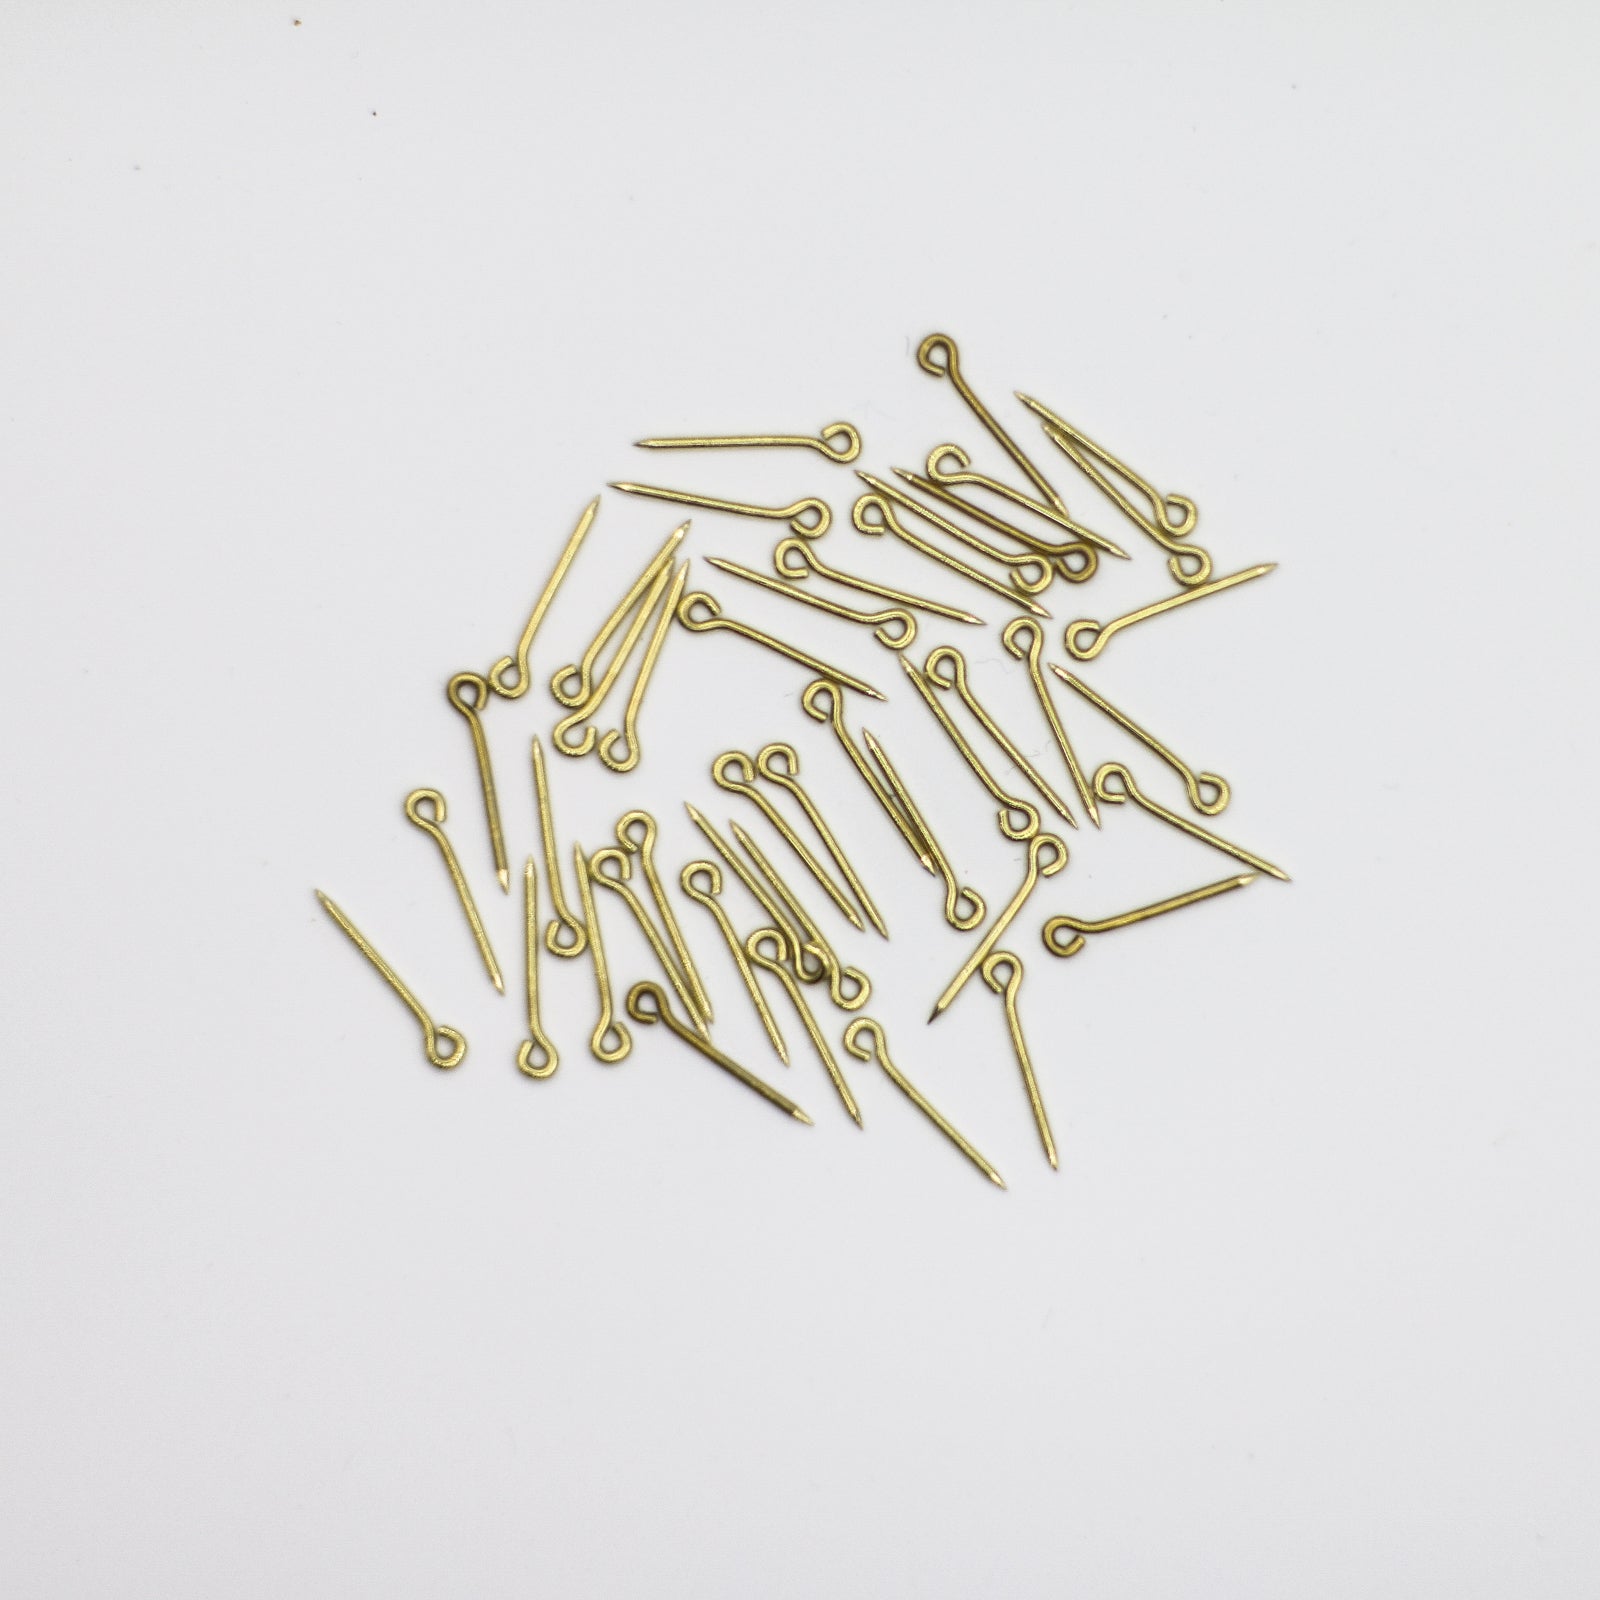 Brass Eye Pins